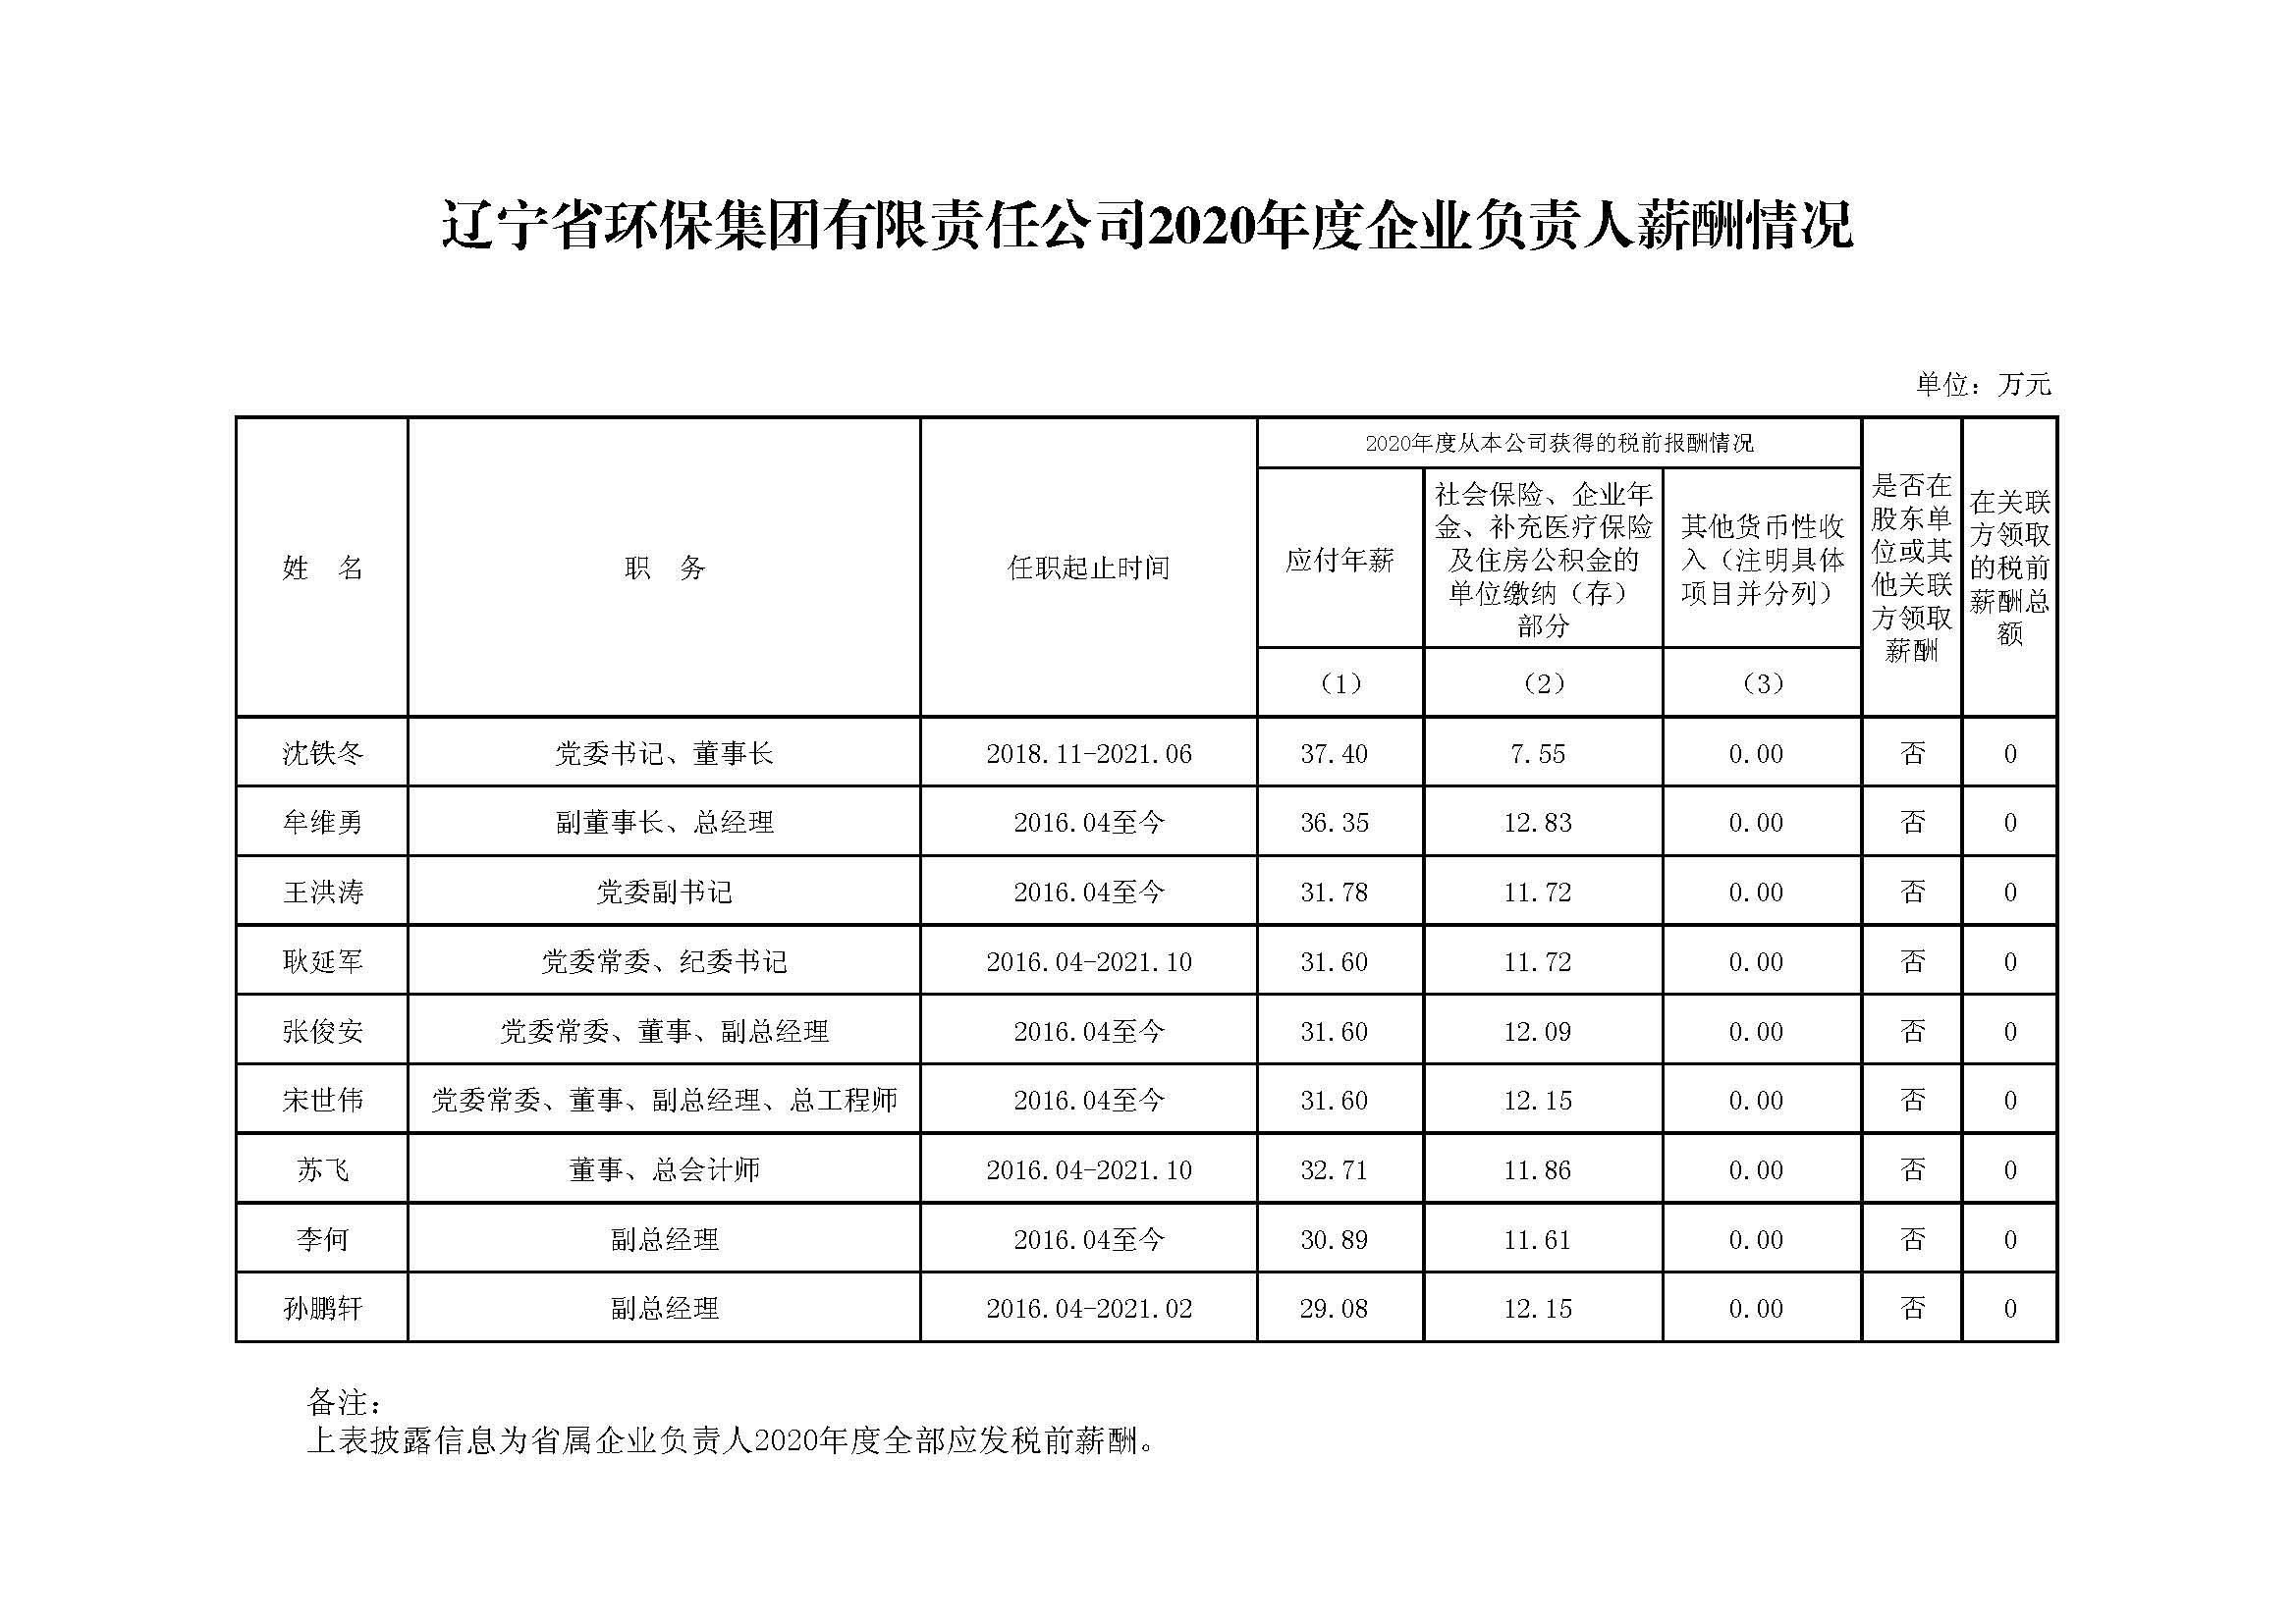 辽宁省环保集团有限责任公司2020年度企业负责人薪酬情况